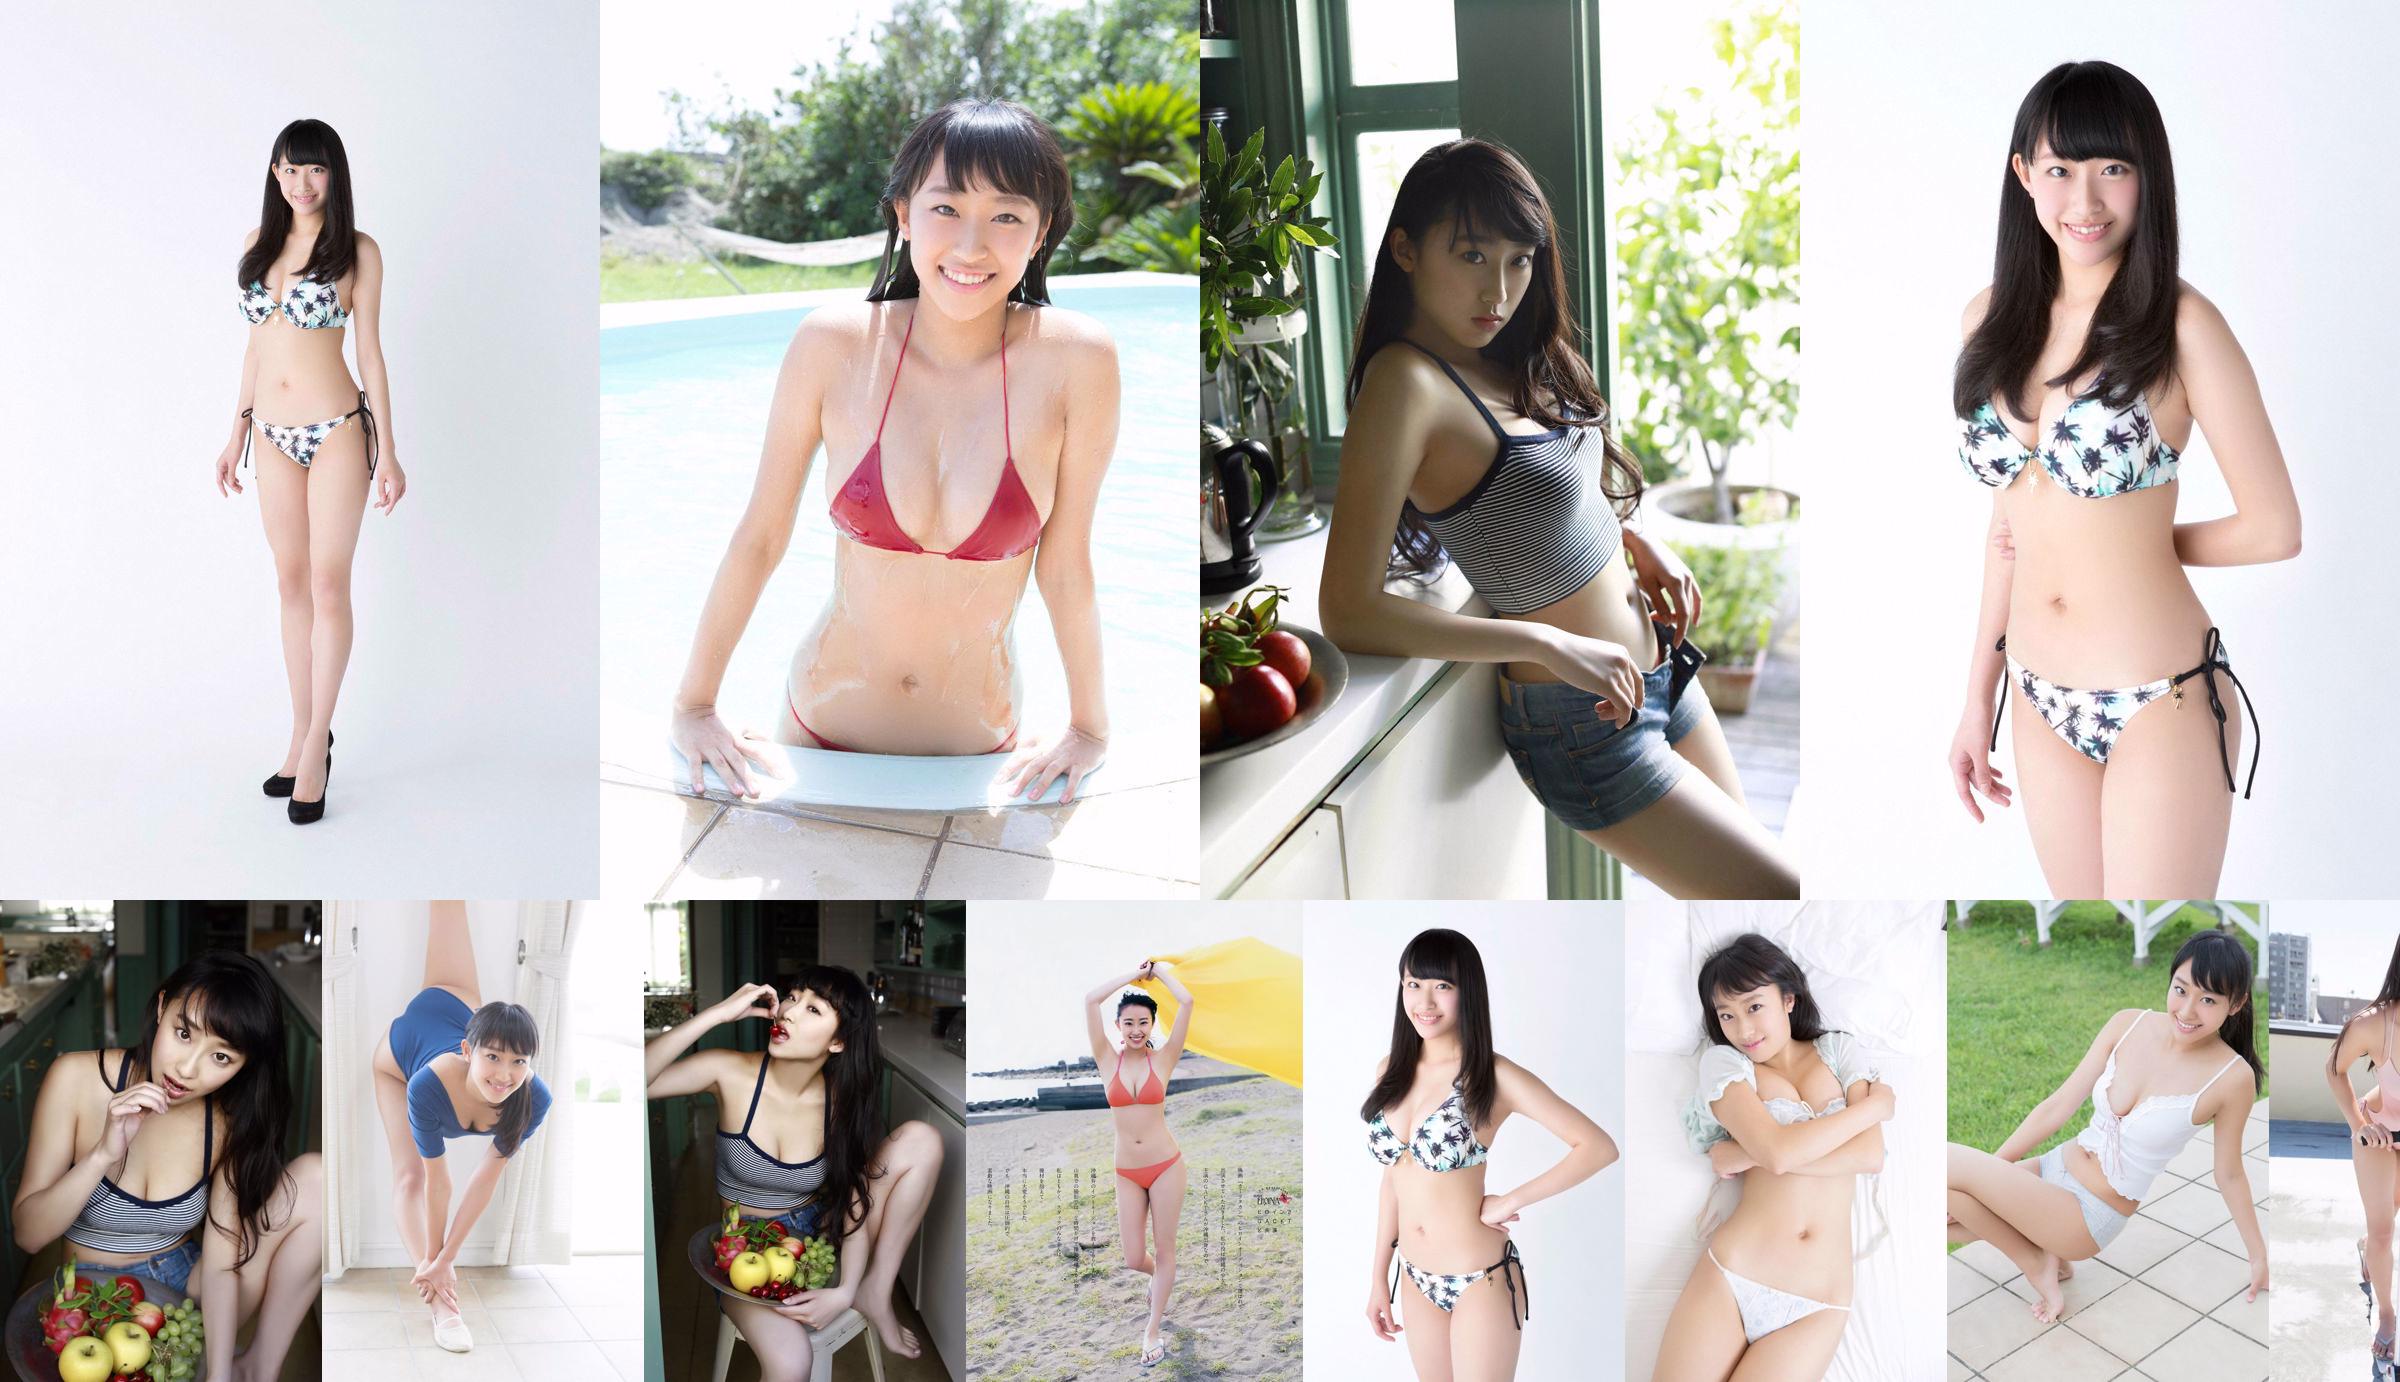 Matsura Sa Yuri Matsura Kaori ミリオンガールズZ [Jong Dier] 2014 No.14 Photo Magazine No.355ae9 Pagina 16